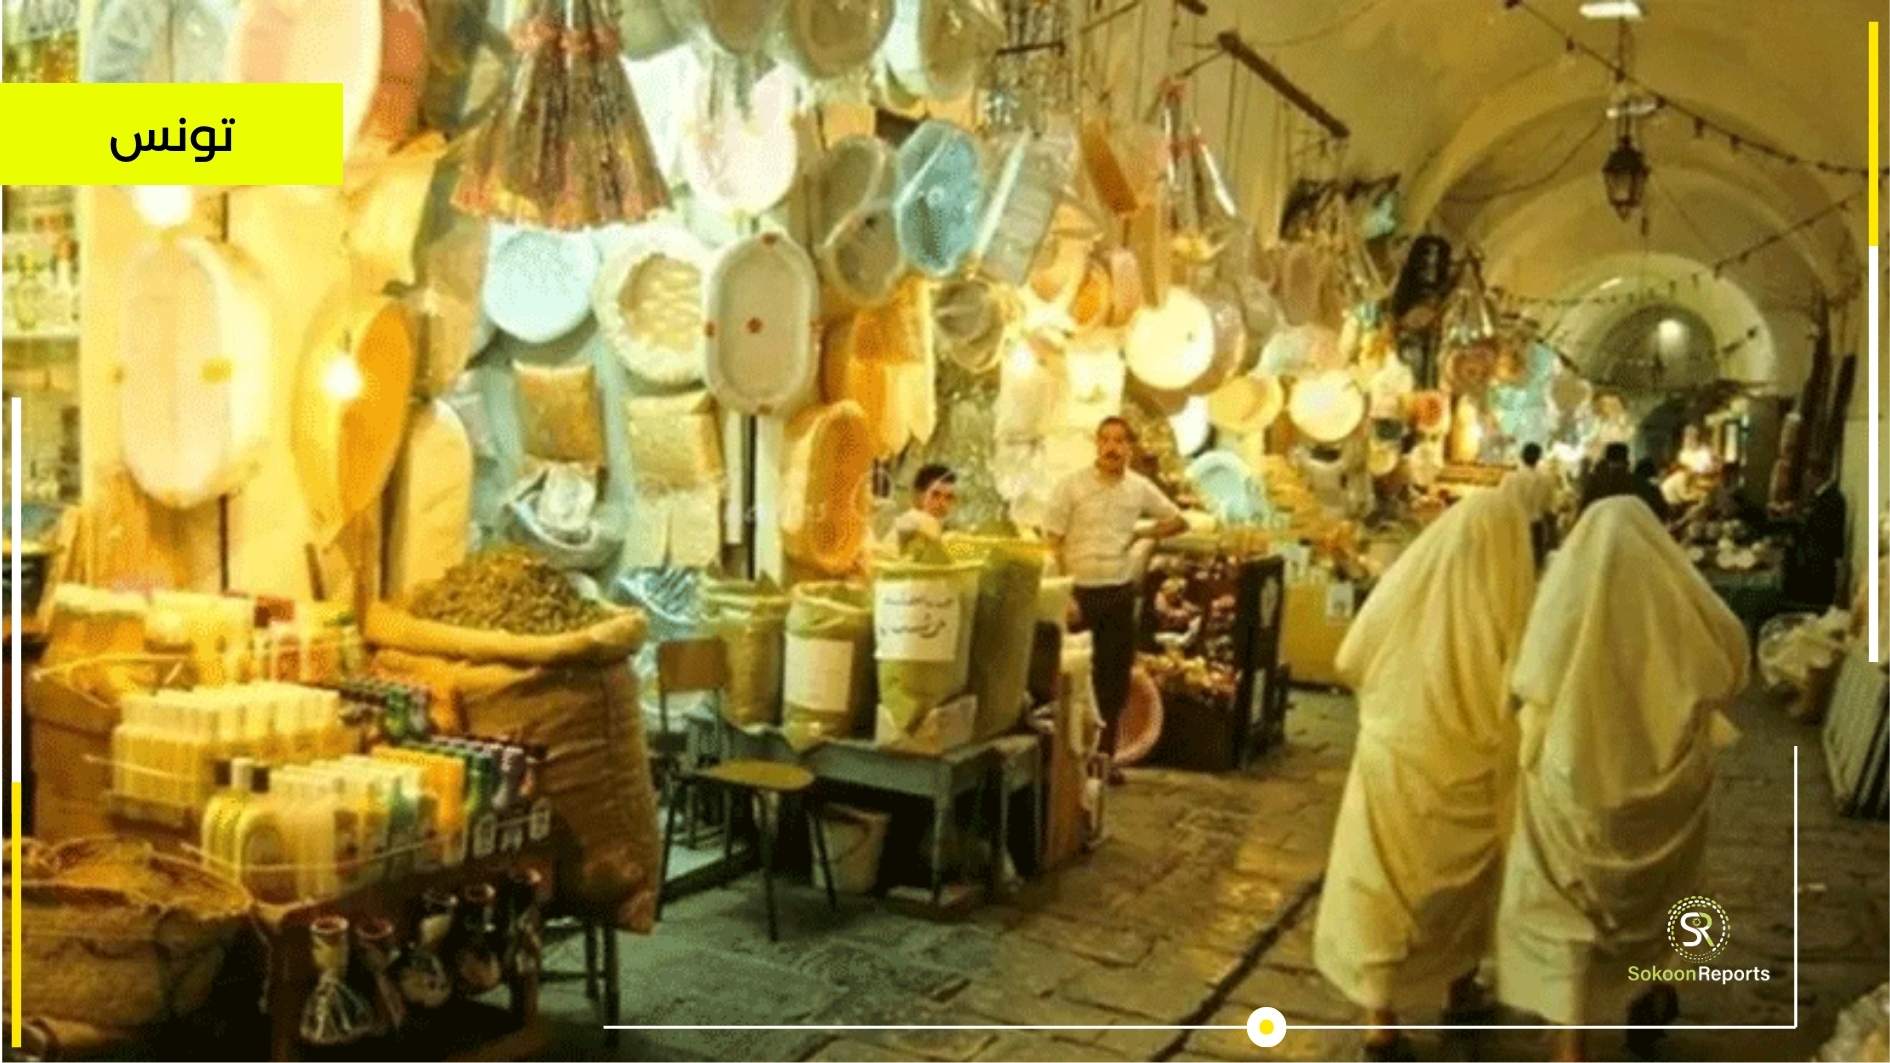 سوق الحلفاويين في تونس تاريخ وماضٍ عريق